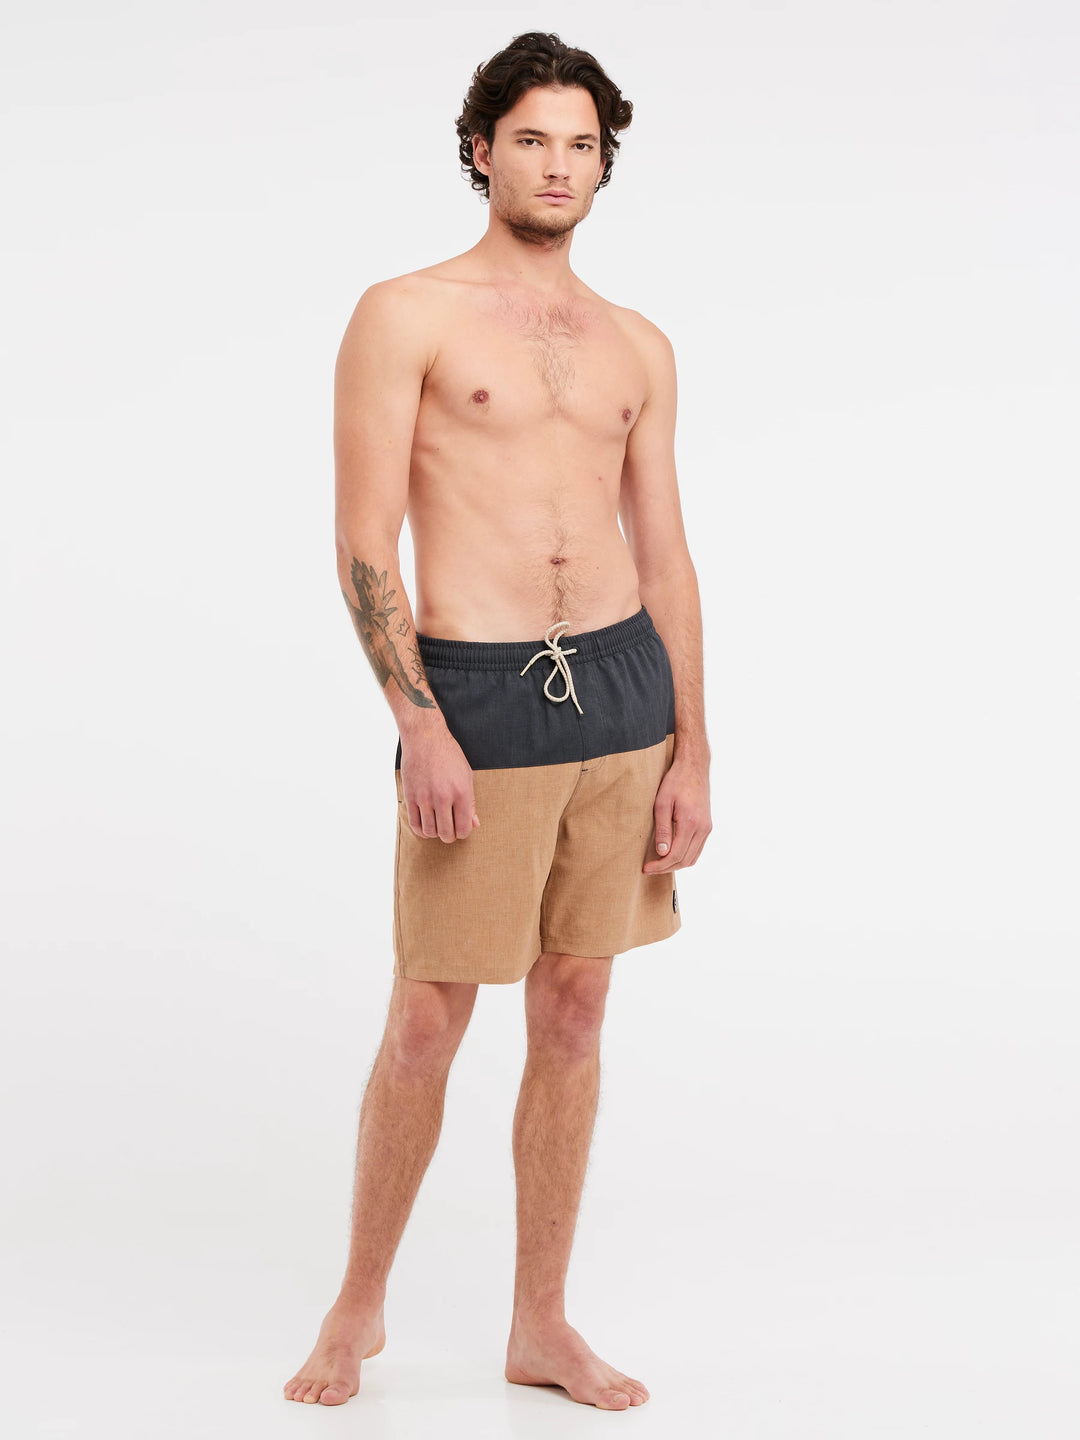 Protest PRTFORTA Men's Beach Shorts - Grey/ Beige